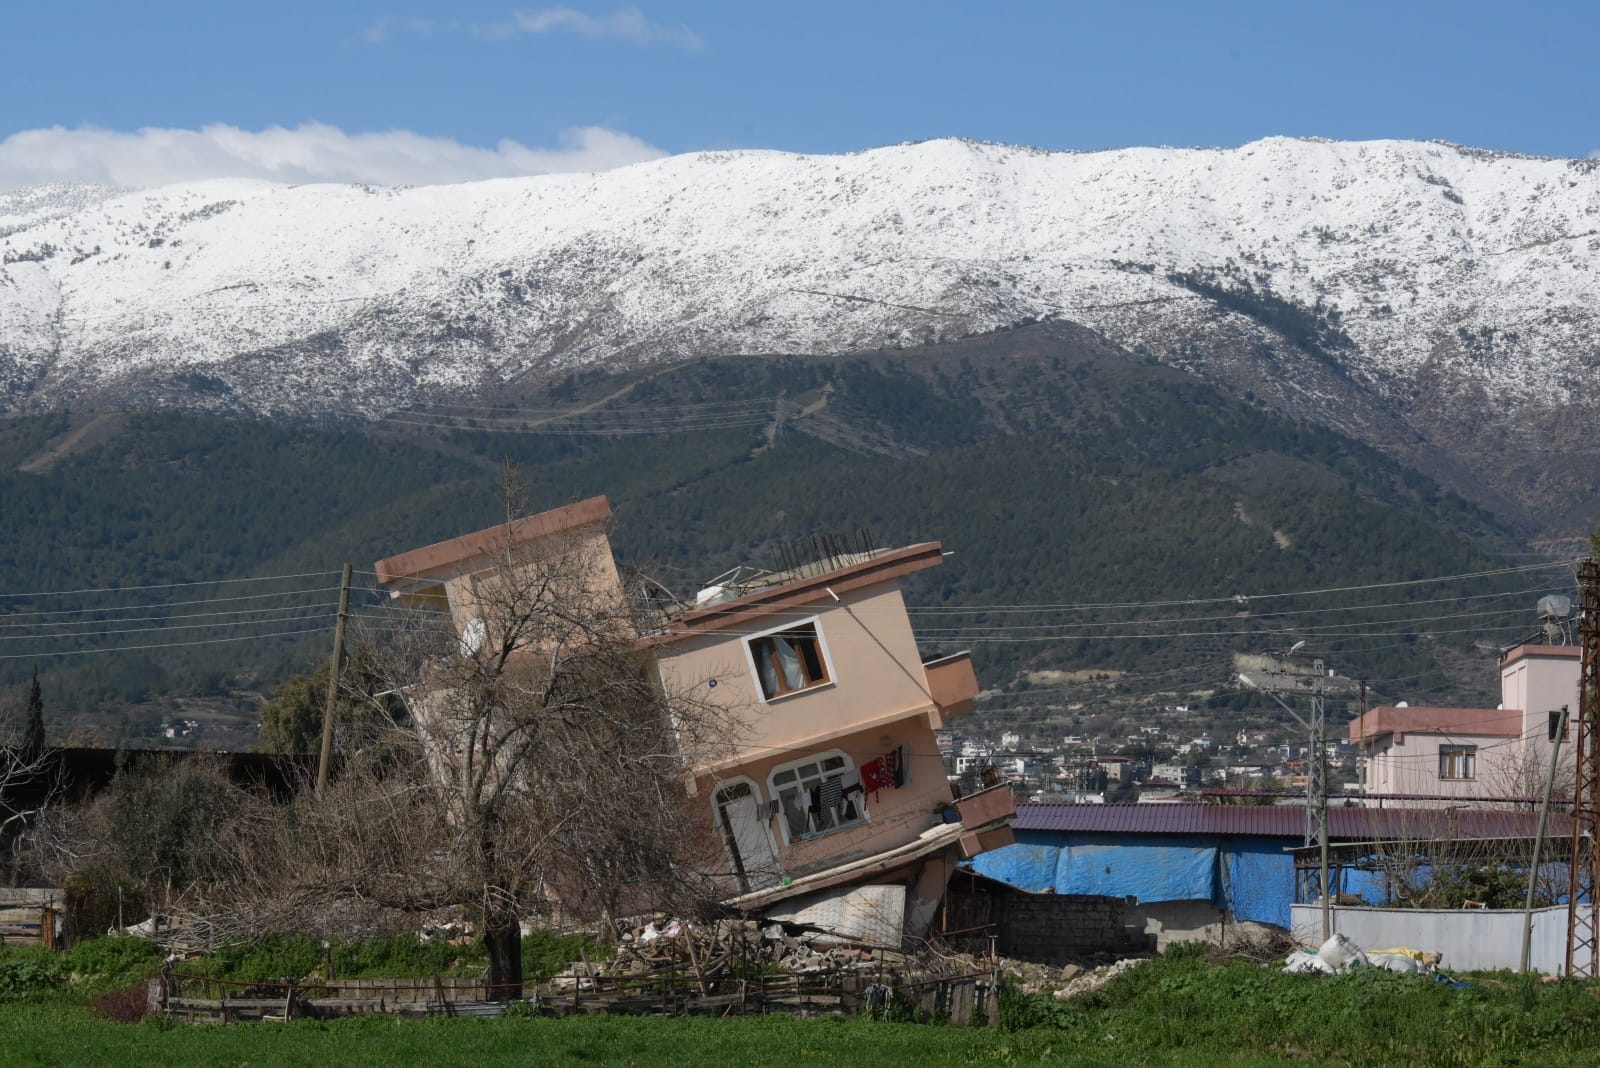 בית פרטי שקרס בכביש המוביל לדרום מזרח טורקיה. ברקע הרי נורי המושלגים. (צילום: אוריאל לוי)